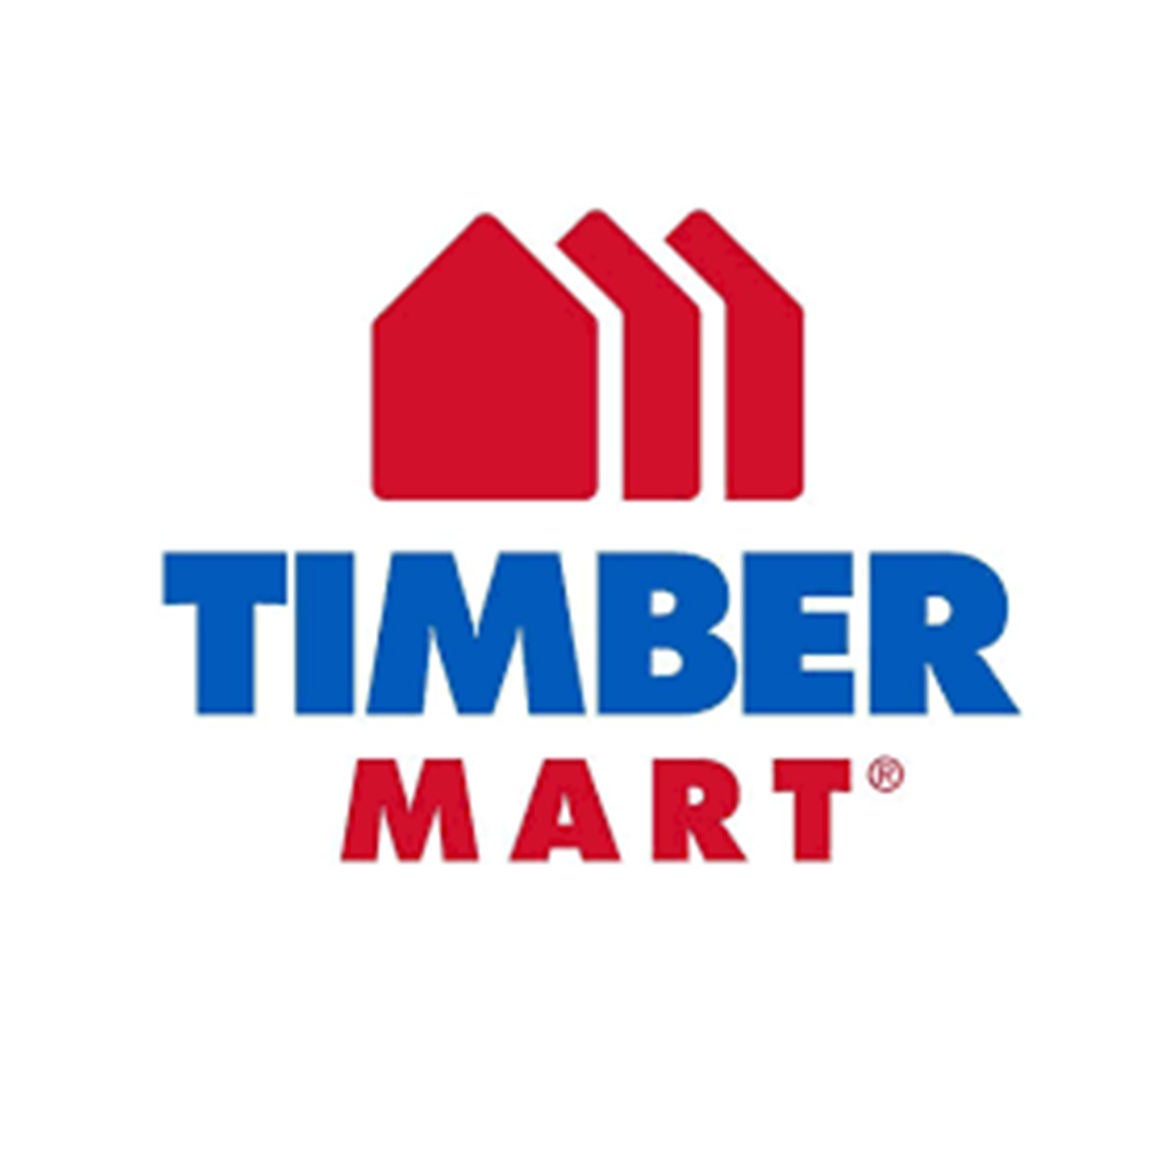 TimberMart